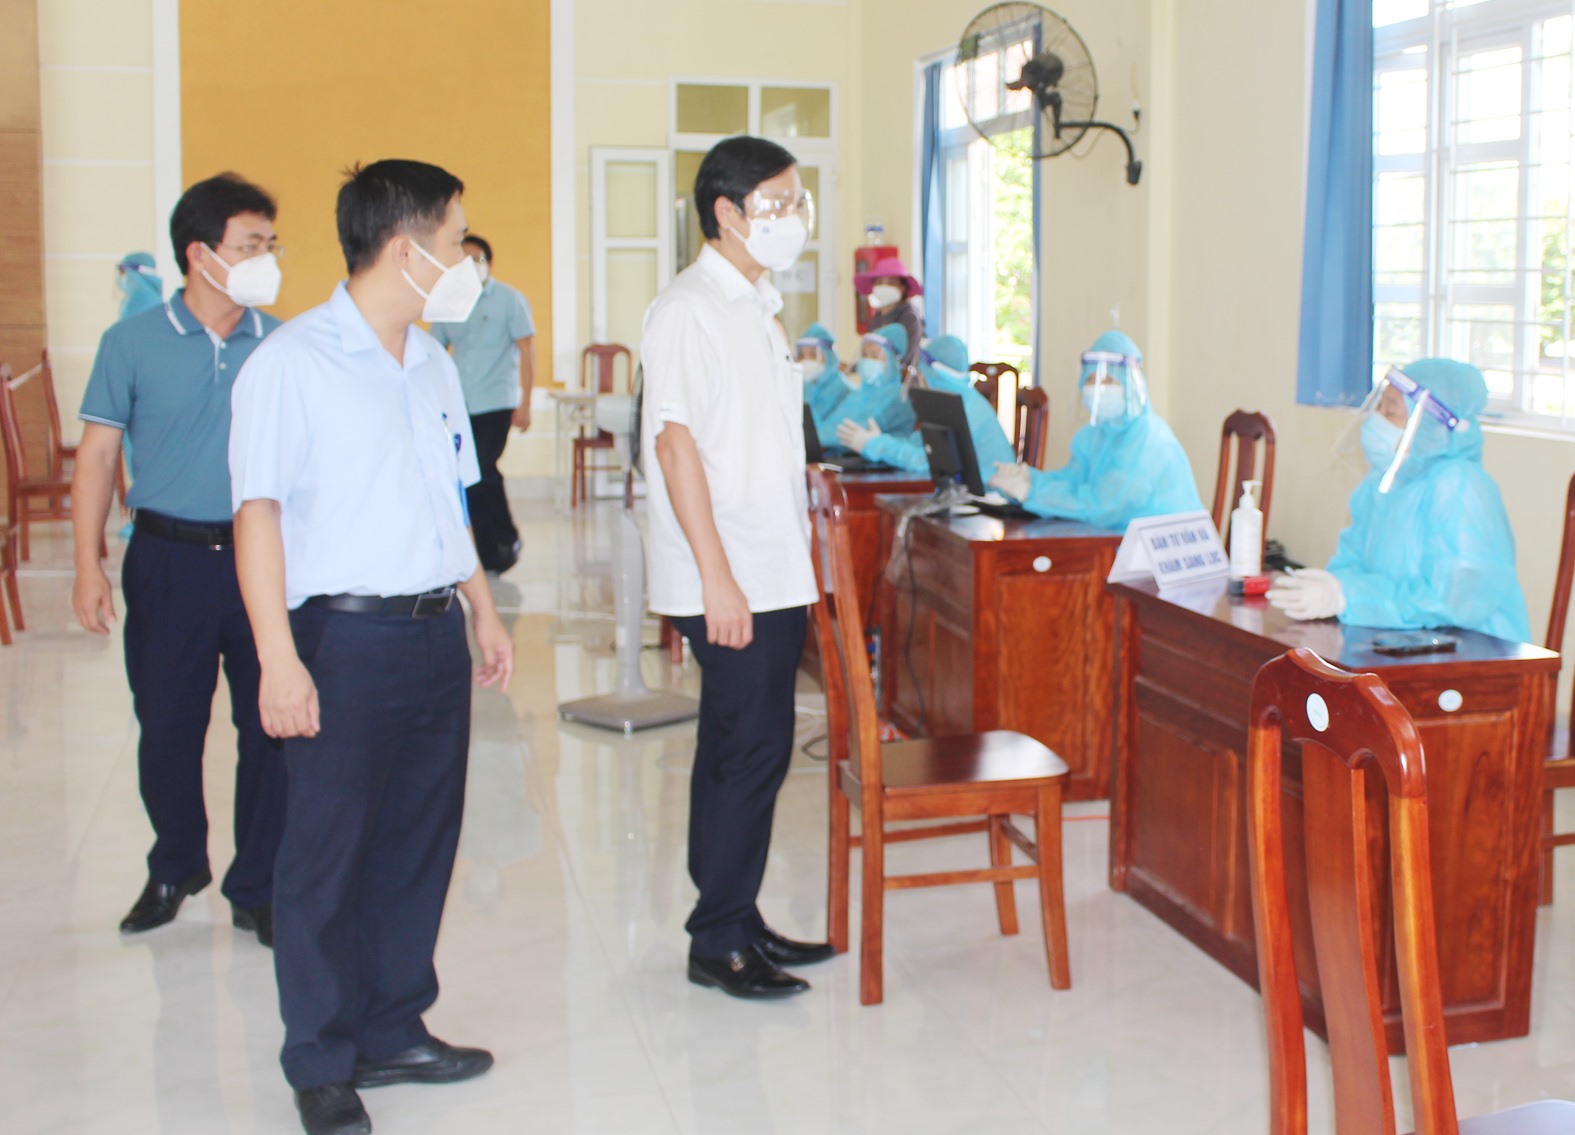 Phó Chủ tịch UBND tỉnh Hoàng Nam kiểm tra công tác tiêm vắc xin tại TP.Đông Hà trong thời gian thành phố thực hiện Chỉ thị 16 của Thủ tướng Chính phủ - Ảnh: Tú Linh